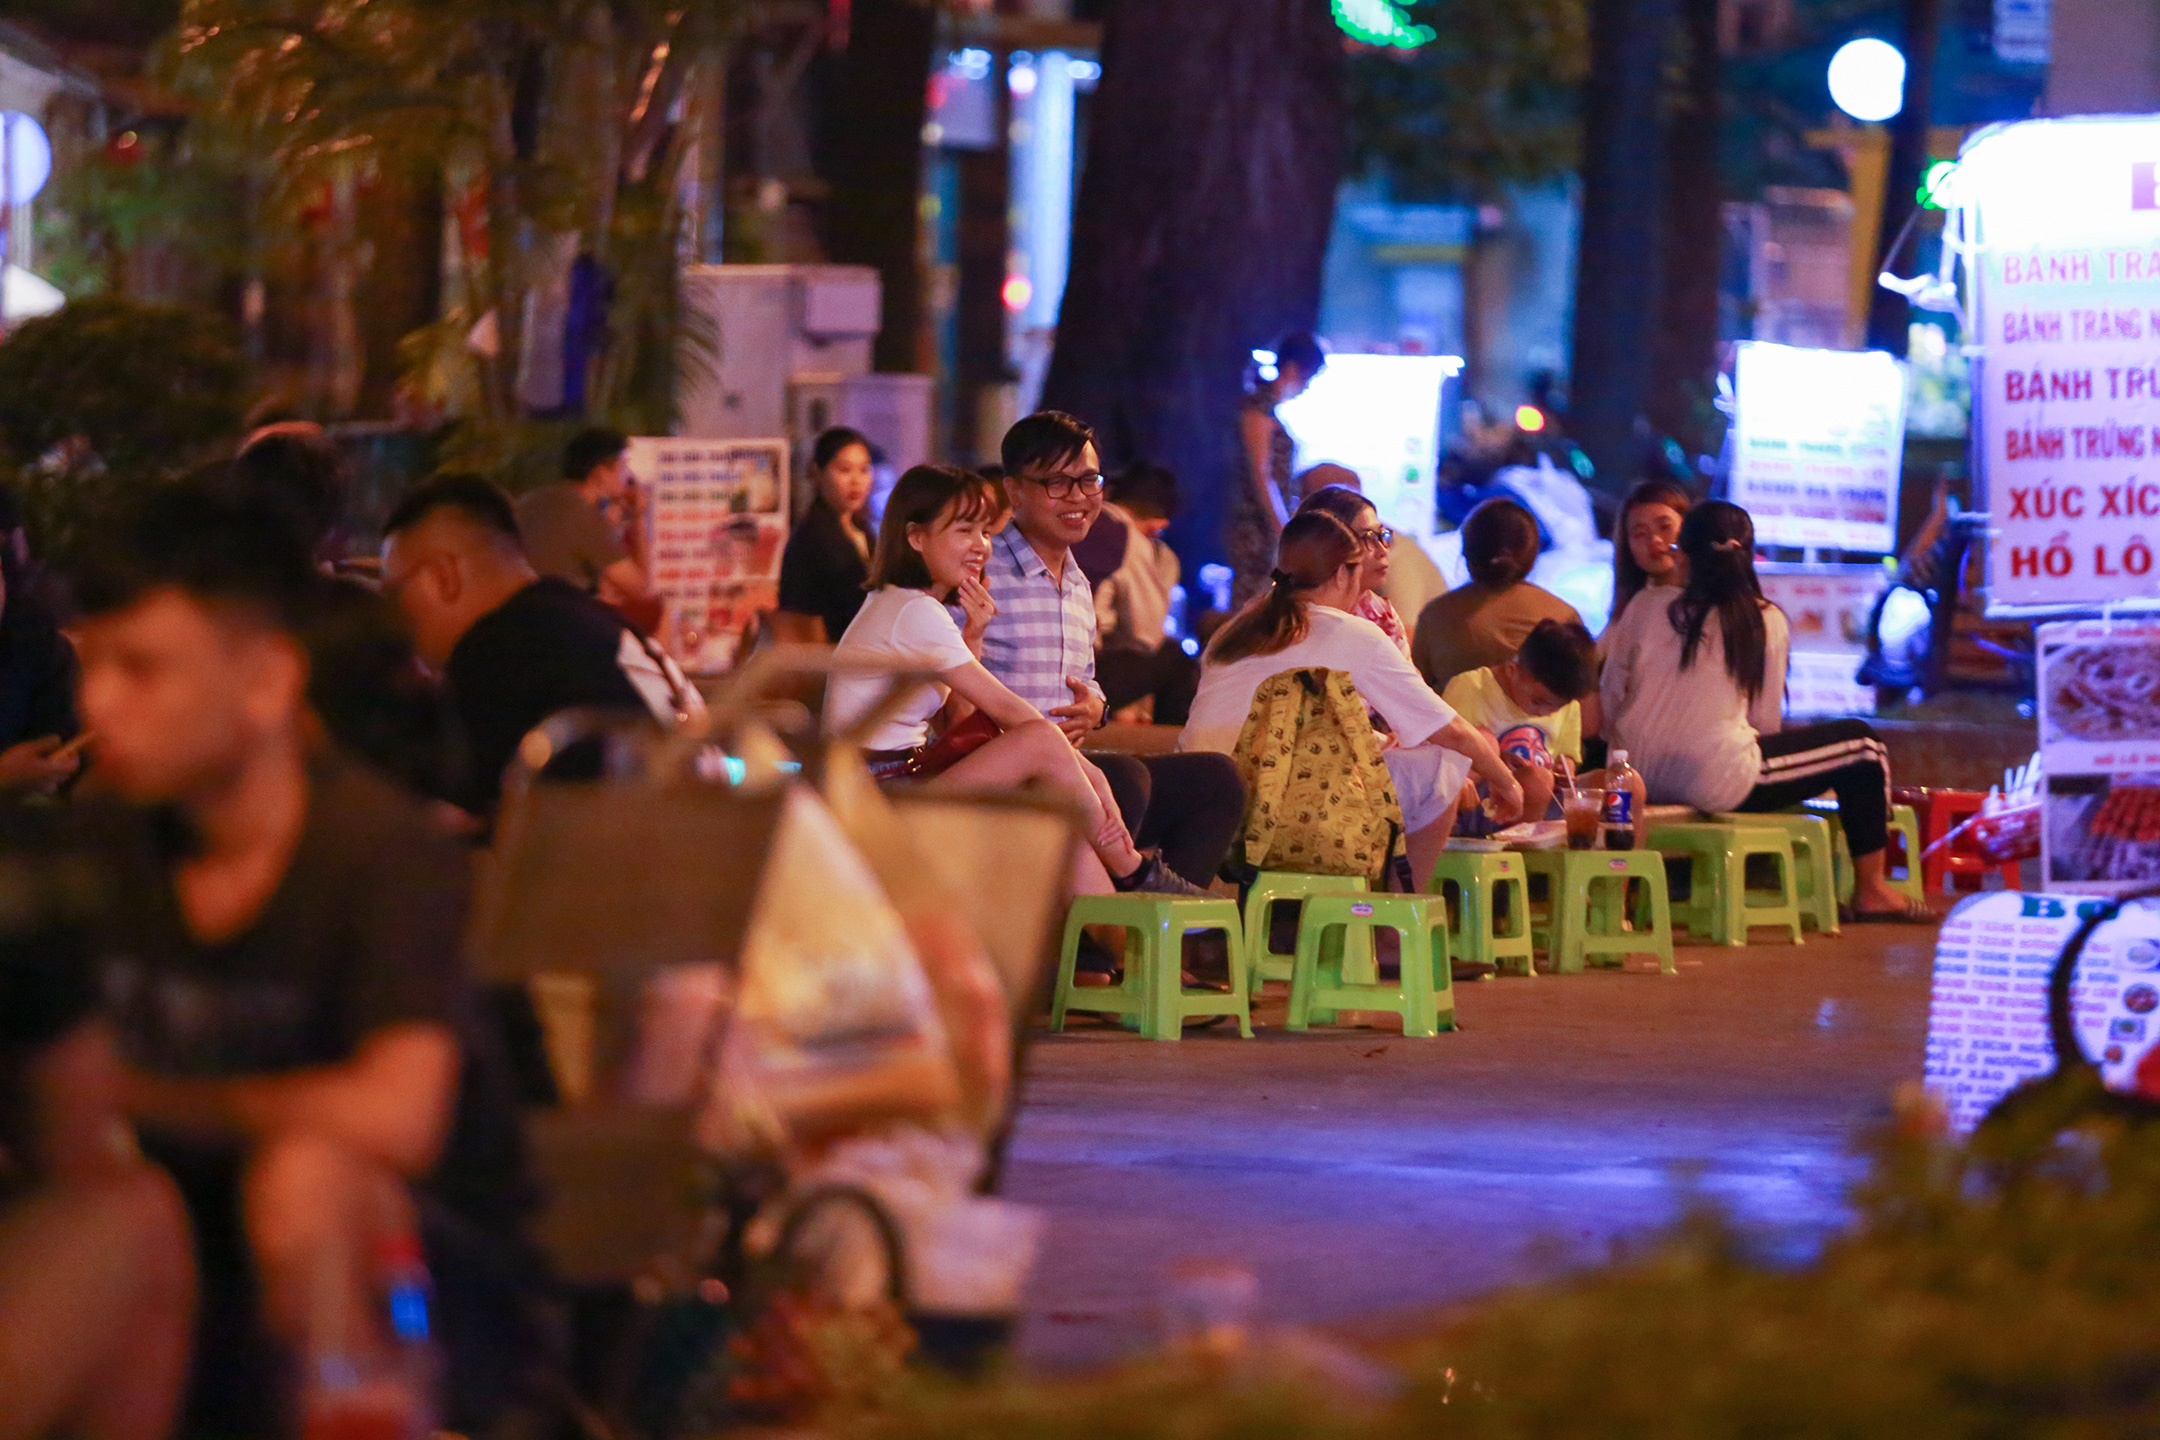 Sài Gòn vắng lặng sau khi nhà hàng, phòng gym, salon tóc đóng cửa, nhưng lác đác quán xá vỉa hè đông vui - Ảnh 11.